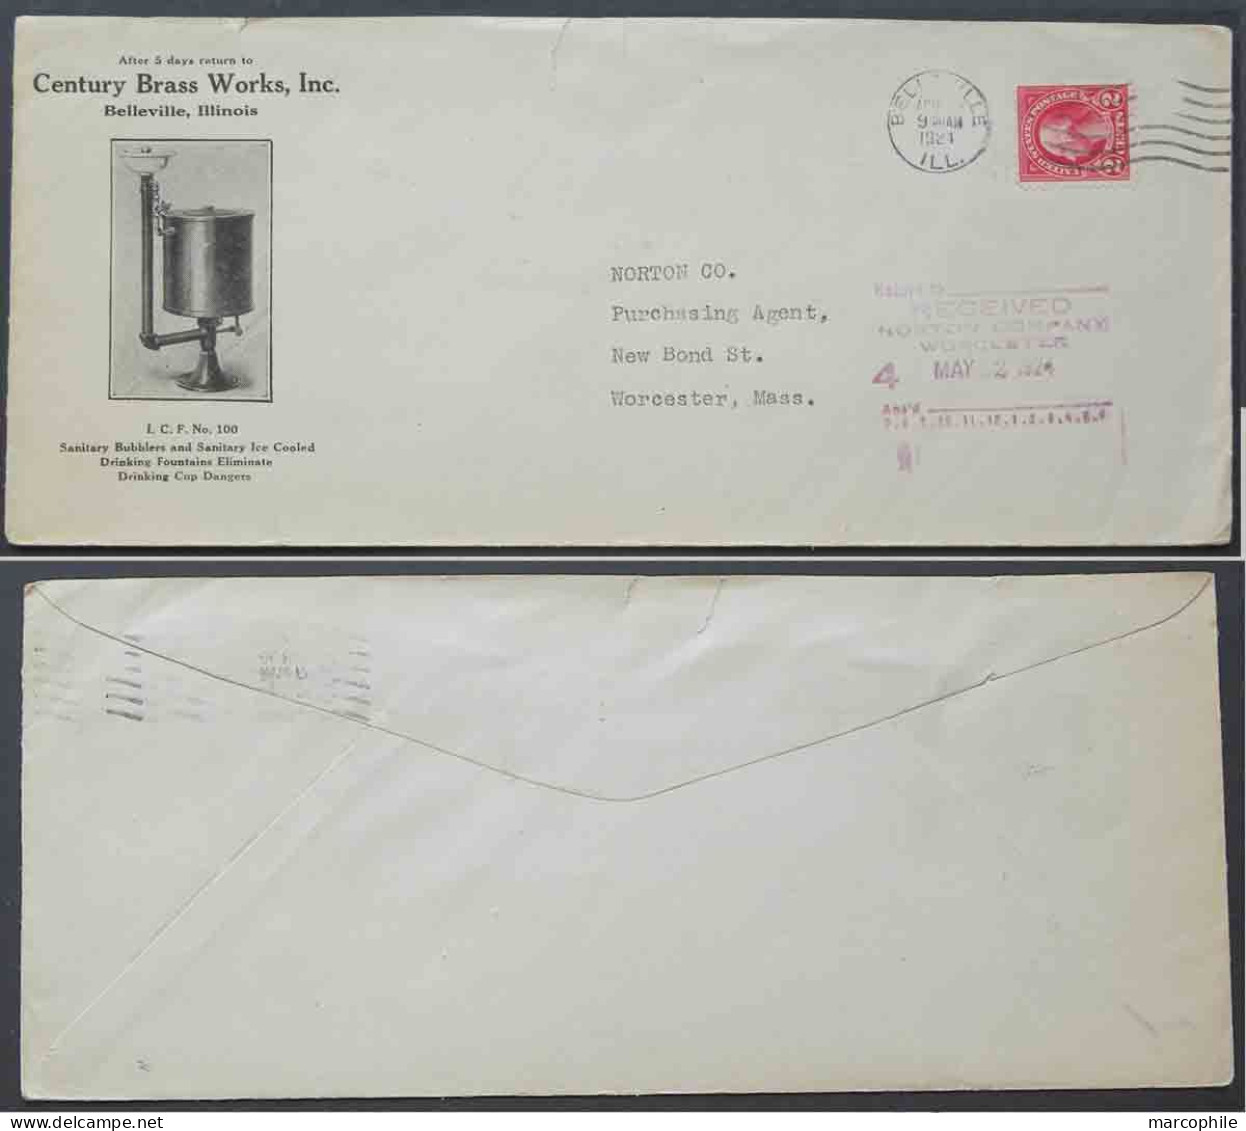 EAU - FONTAINE - LAITON / 1924 USA - BELLEVILLE ENVELOPPE COMMERCIALE ILLUSTREE (ref 4195) - Agua